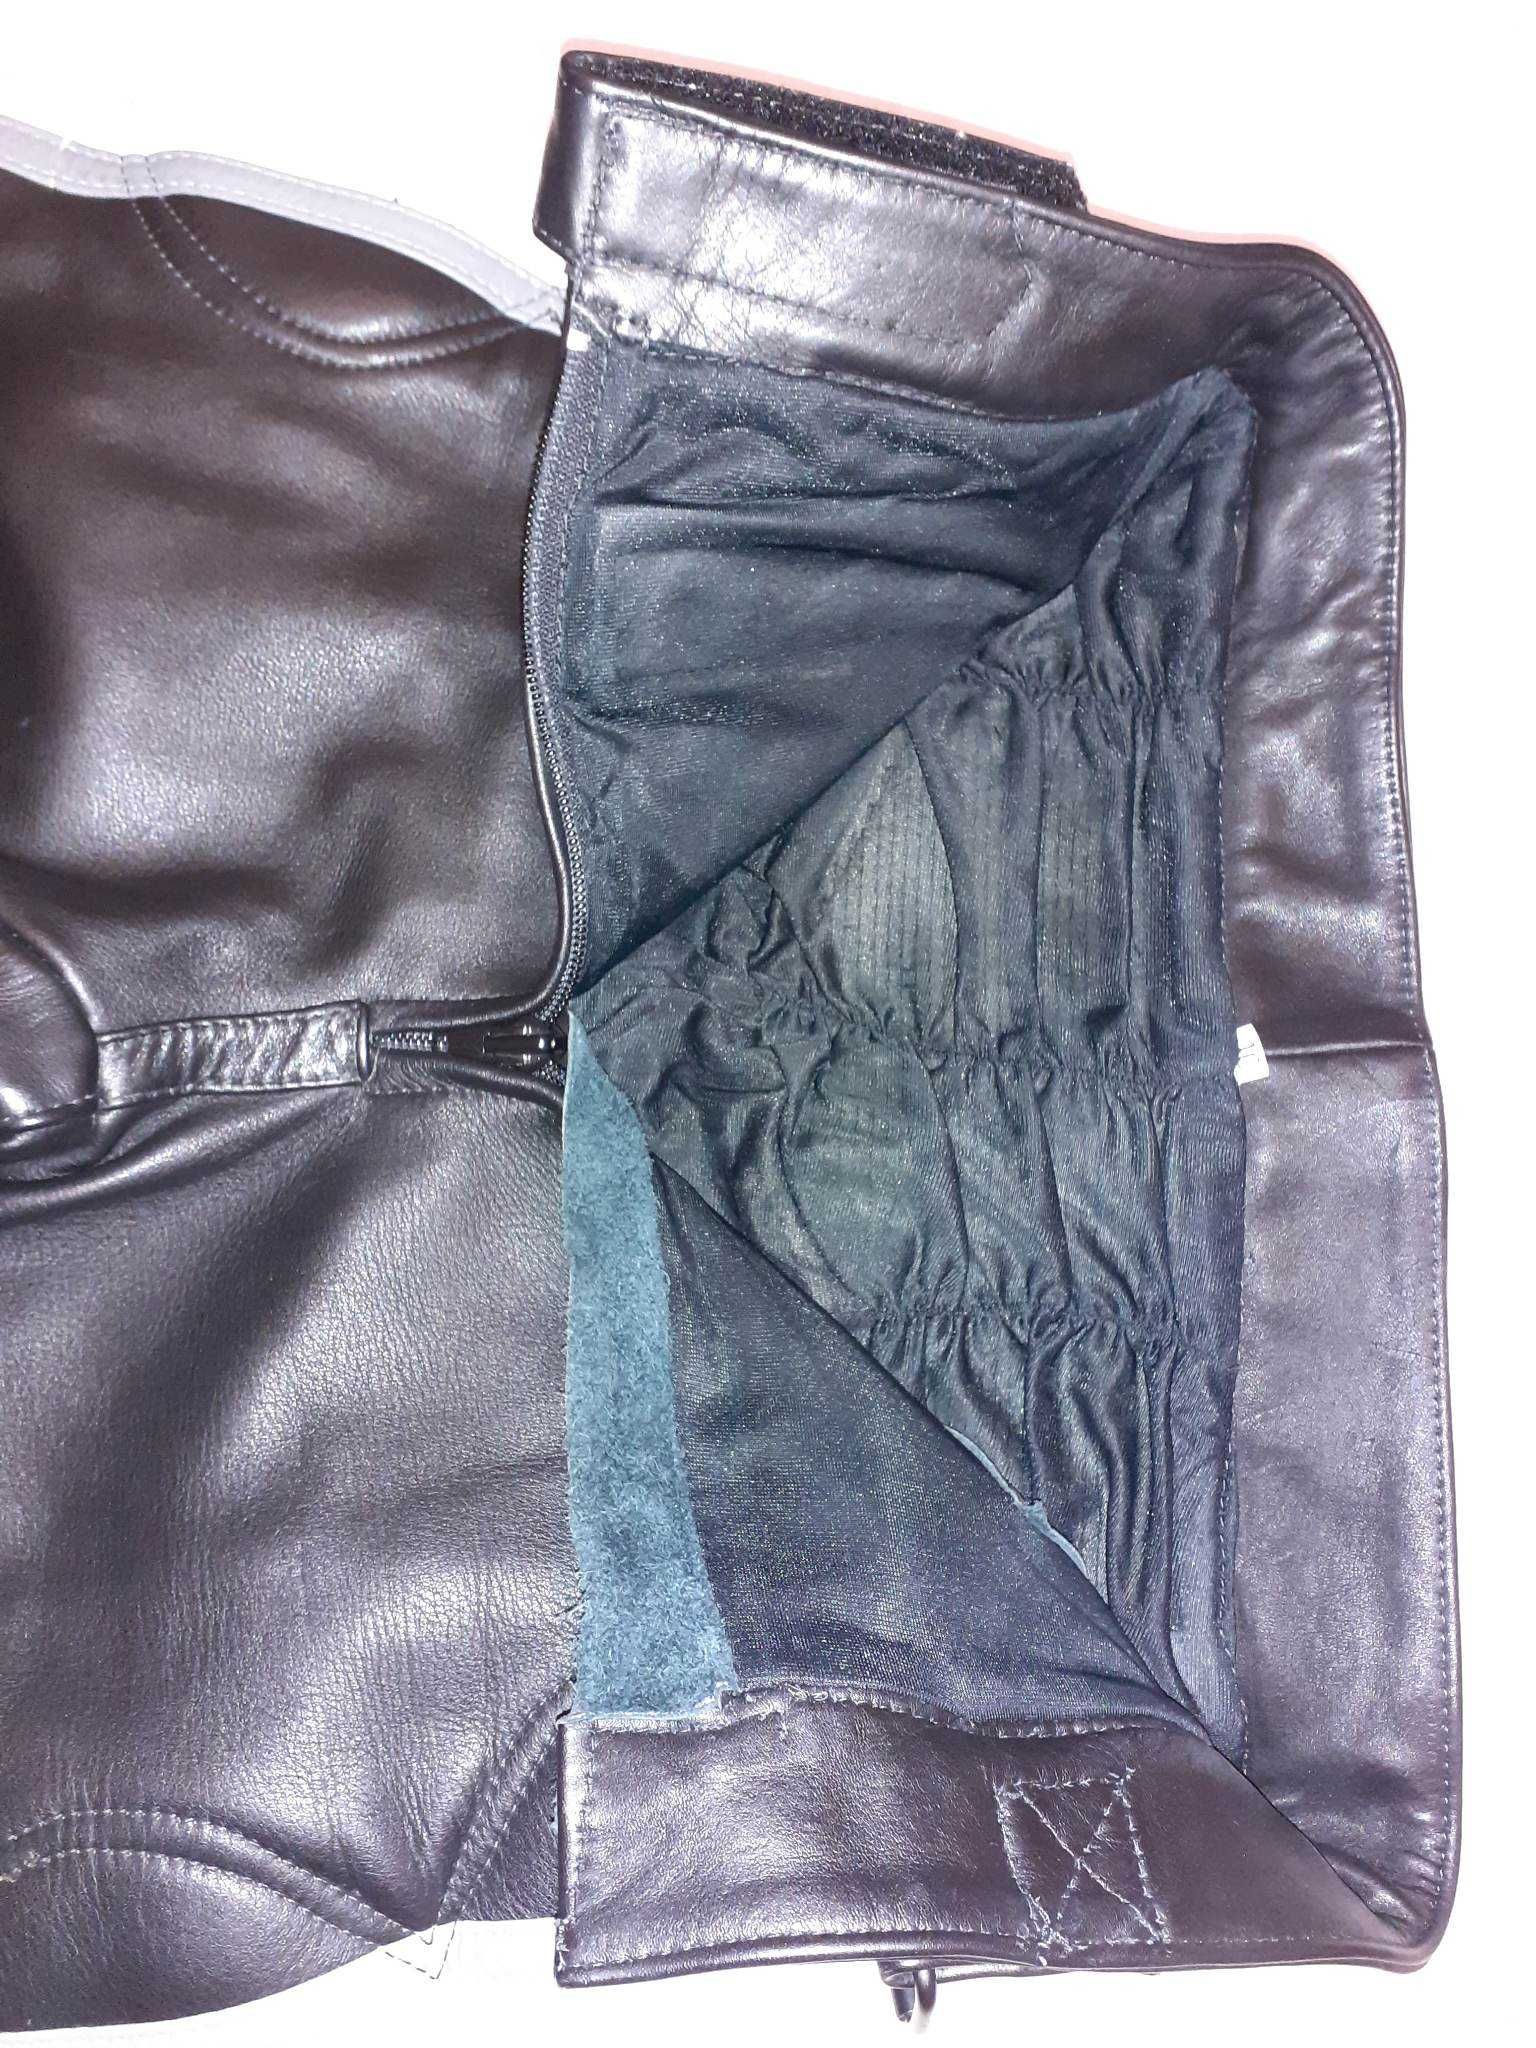 Komplet IXS skóra kurtka+spodnie r XS